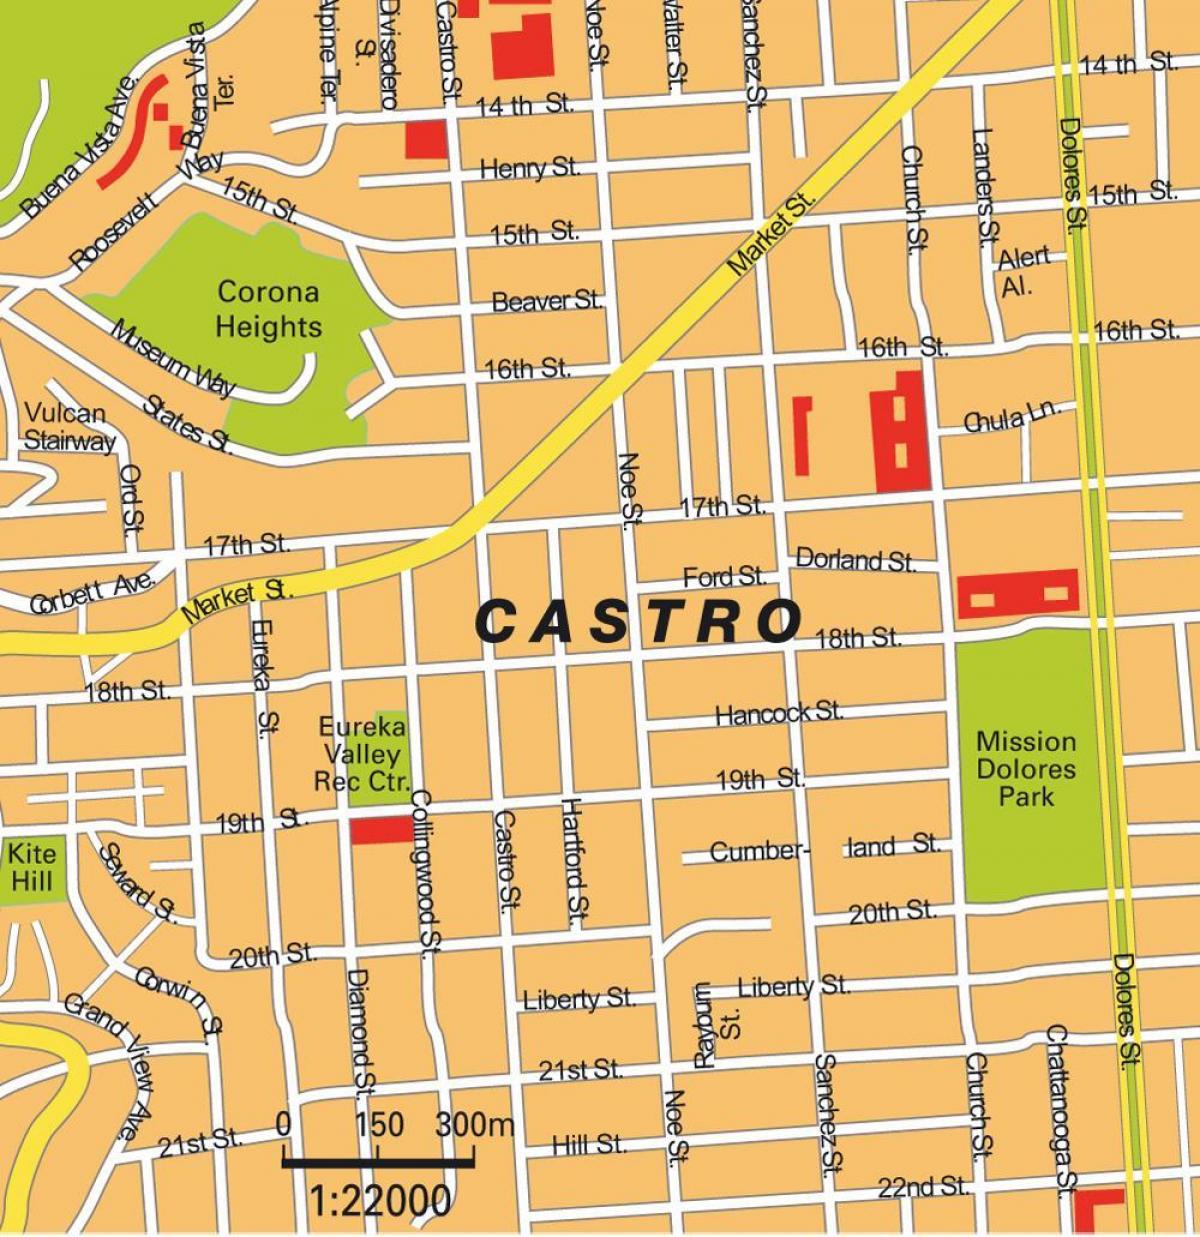 Χάρτης της castro του Σαν Φρανσίσκο